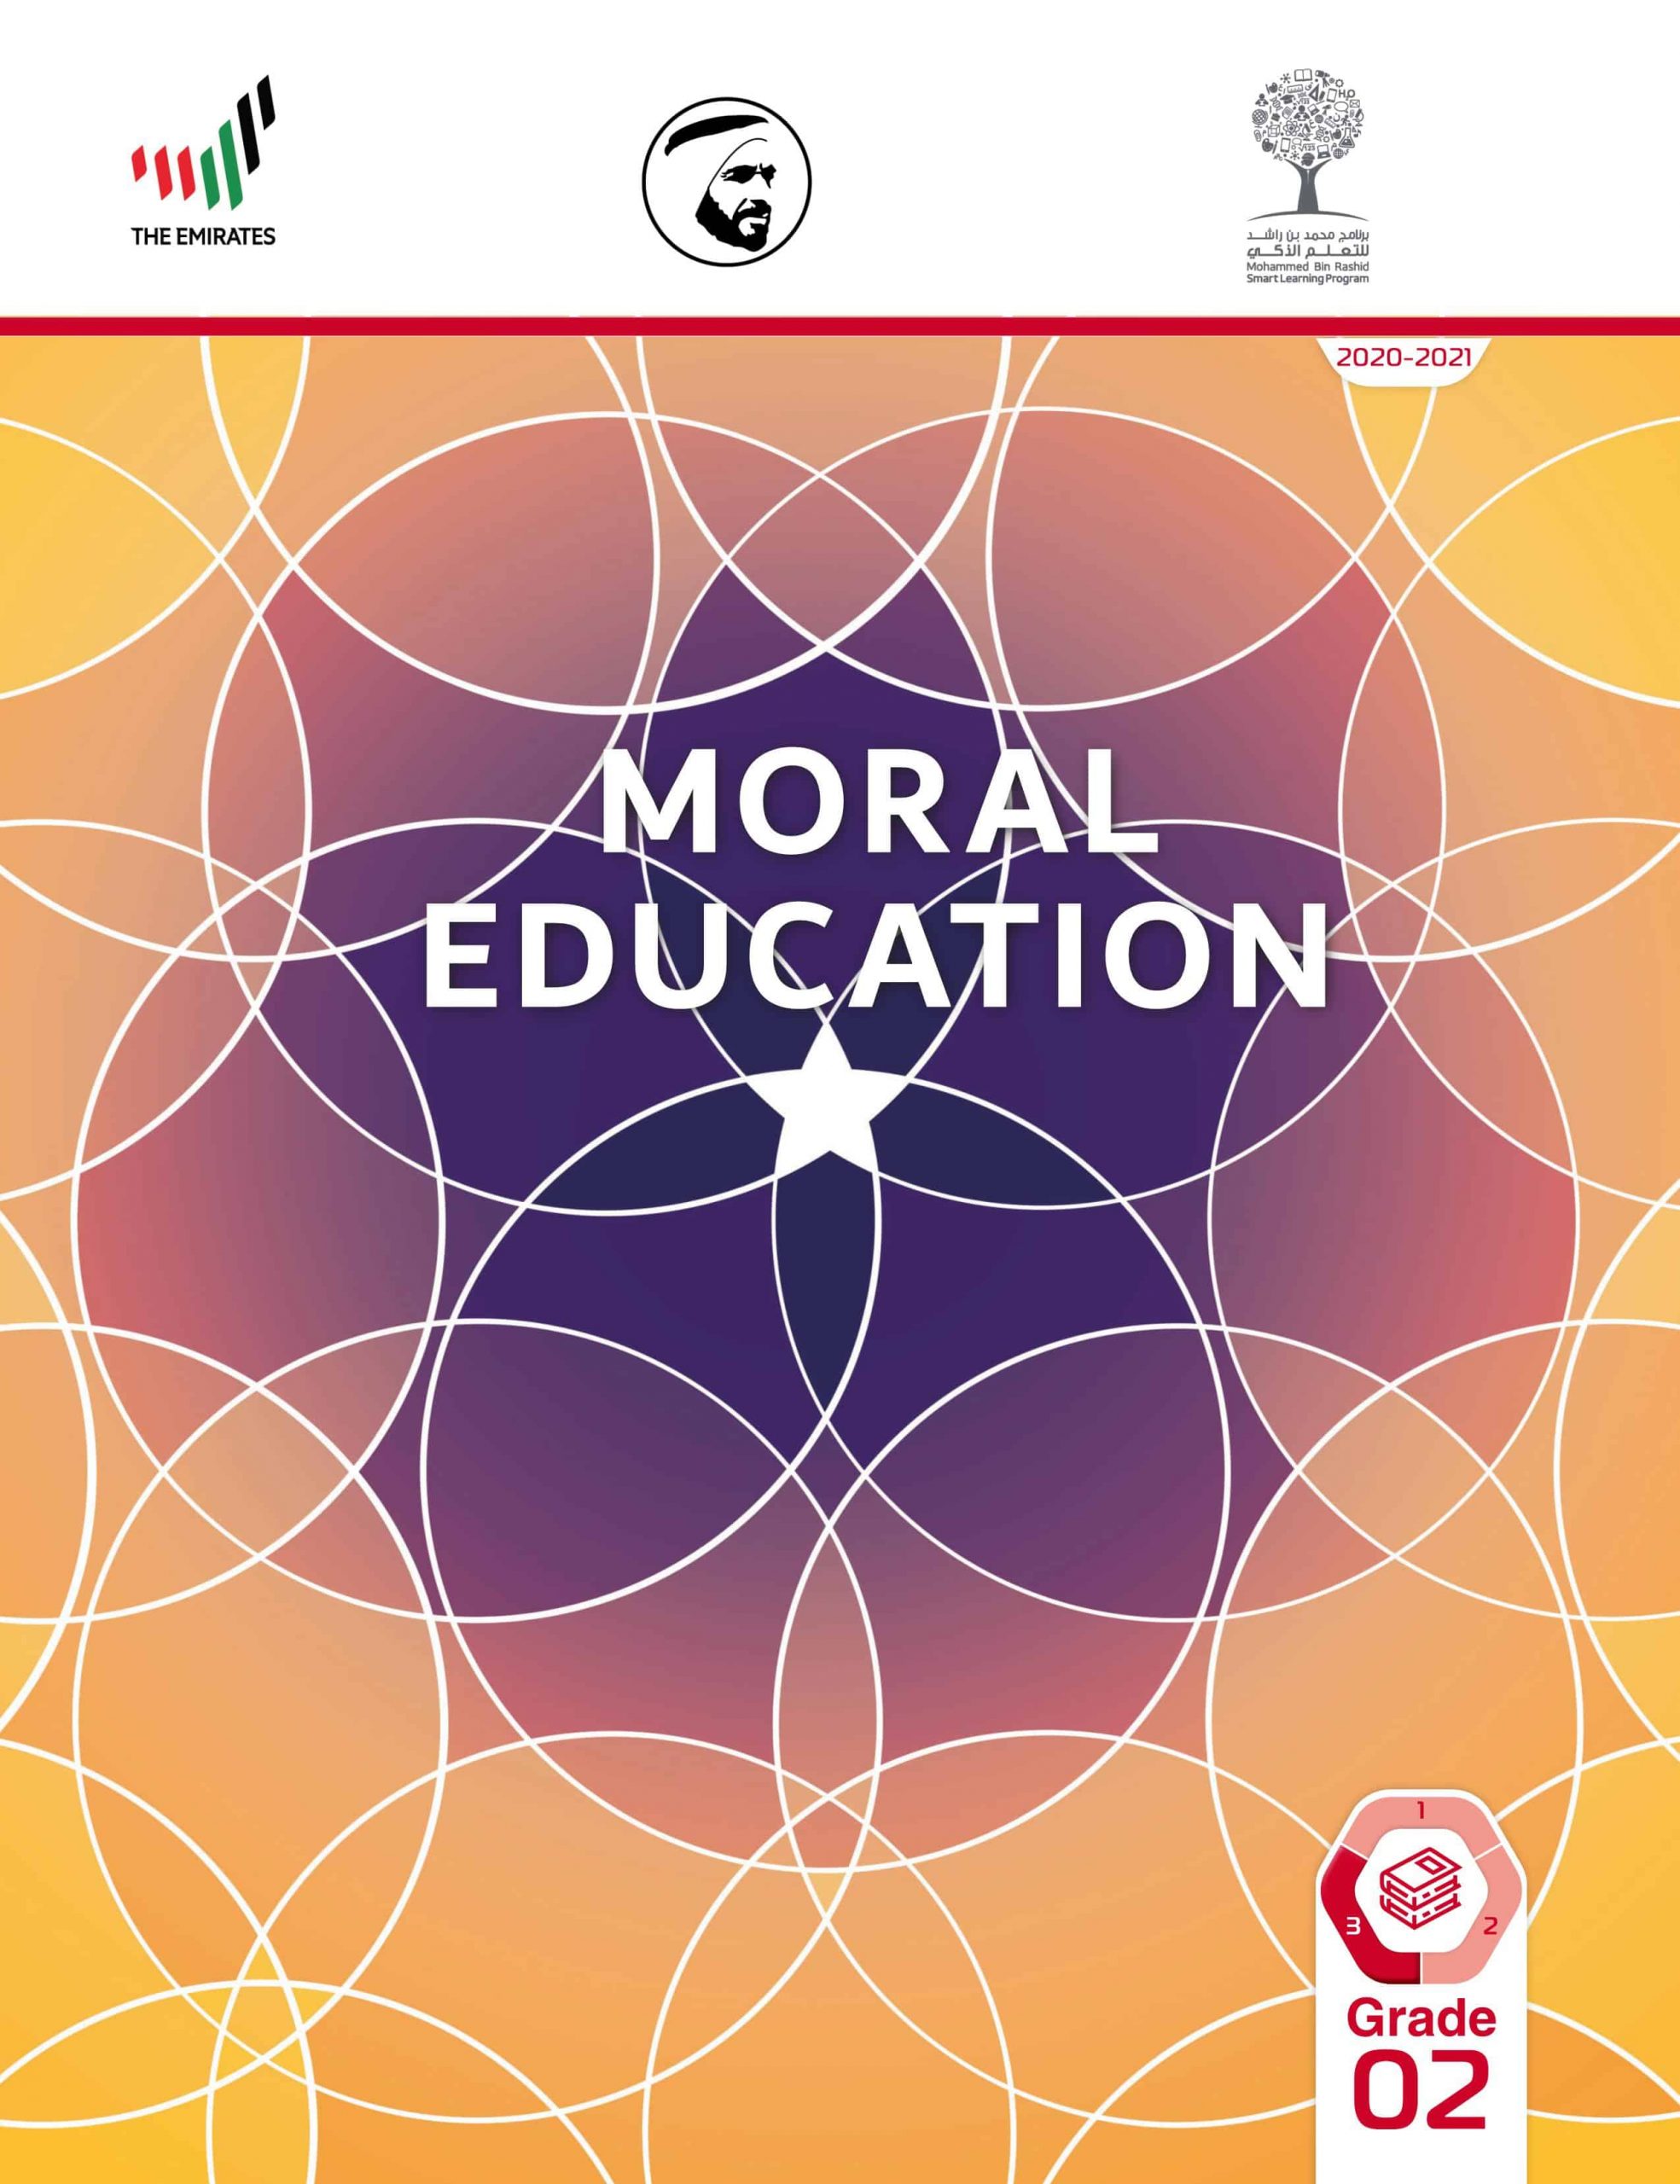 كتاب الطالب بالإنجليزي الفصل الدراسي الثالث 2020-2021 الصف الثاني مادة التربية الأخلاقية